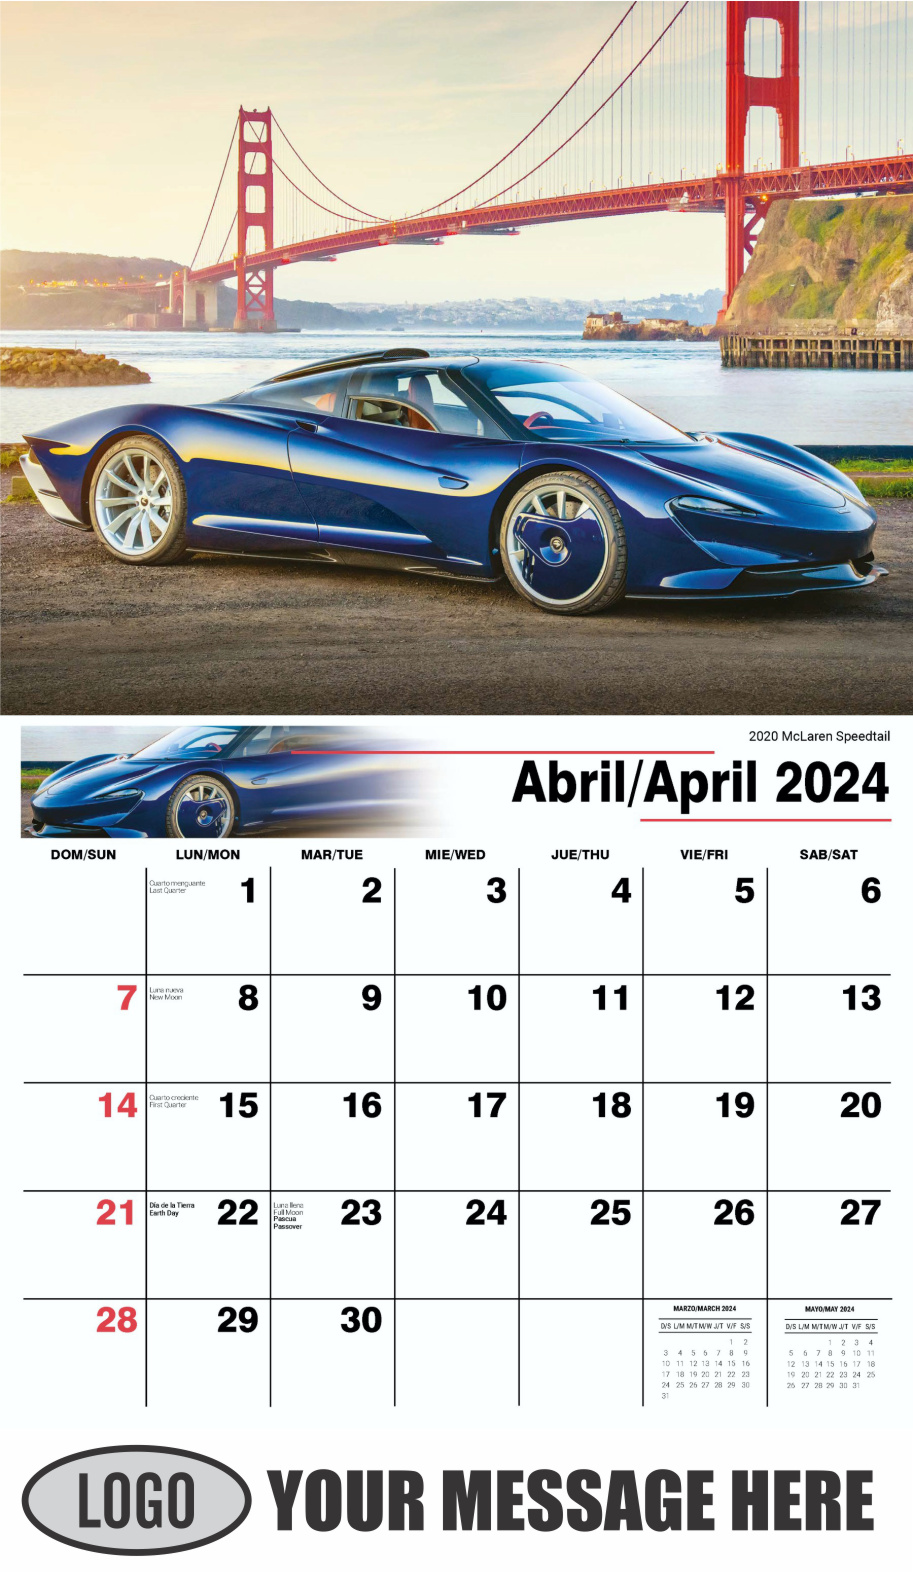 Exotic Cars 2024 Bilingual Automotive Business Promotional Calendar - April